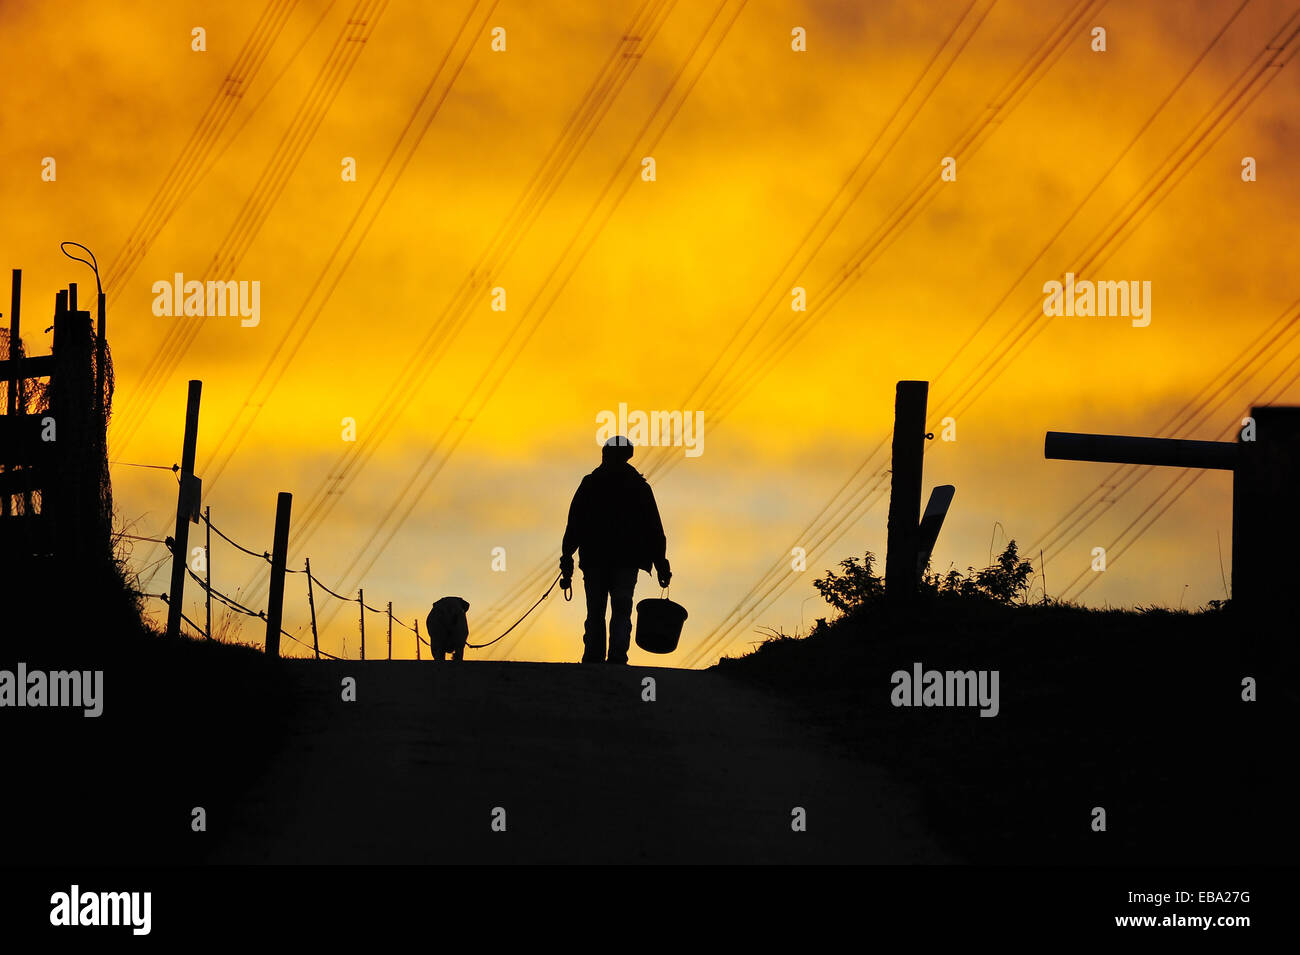 L'homme et le chien à marcher le long chemin, lumière du soir, silhouette, Singscheider Höhe, Essen-Kupferdreh, Rhénanie du Nord-Westphalie, Allemagne Banque D'Images